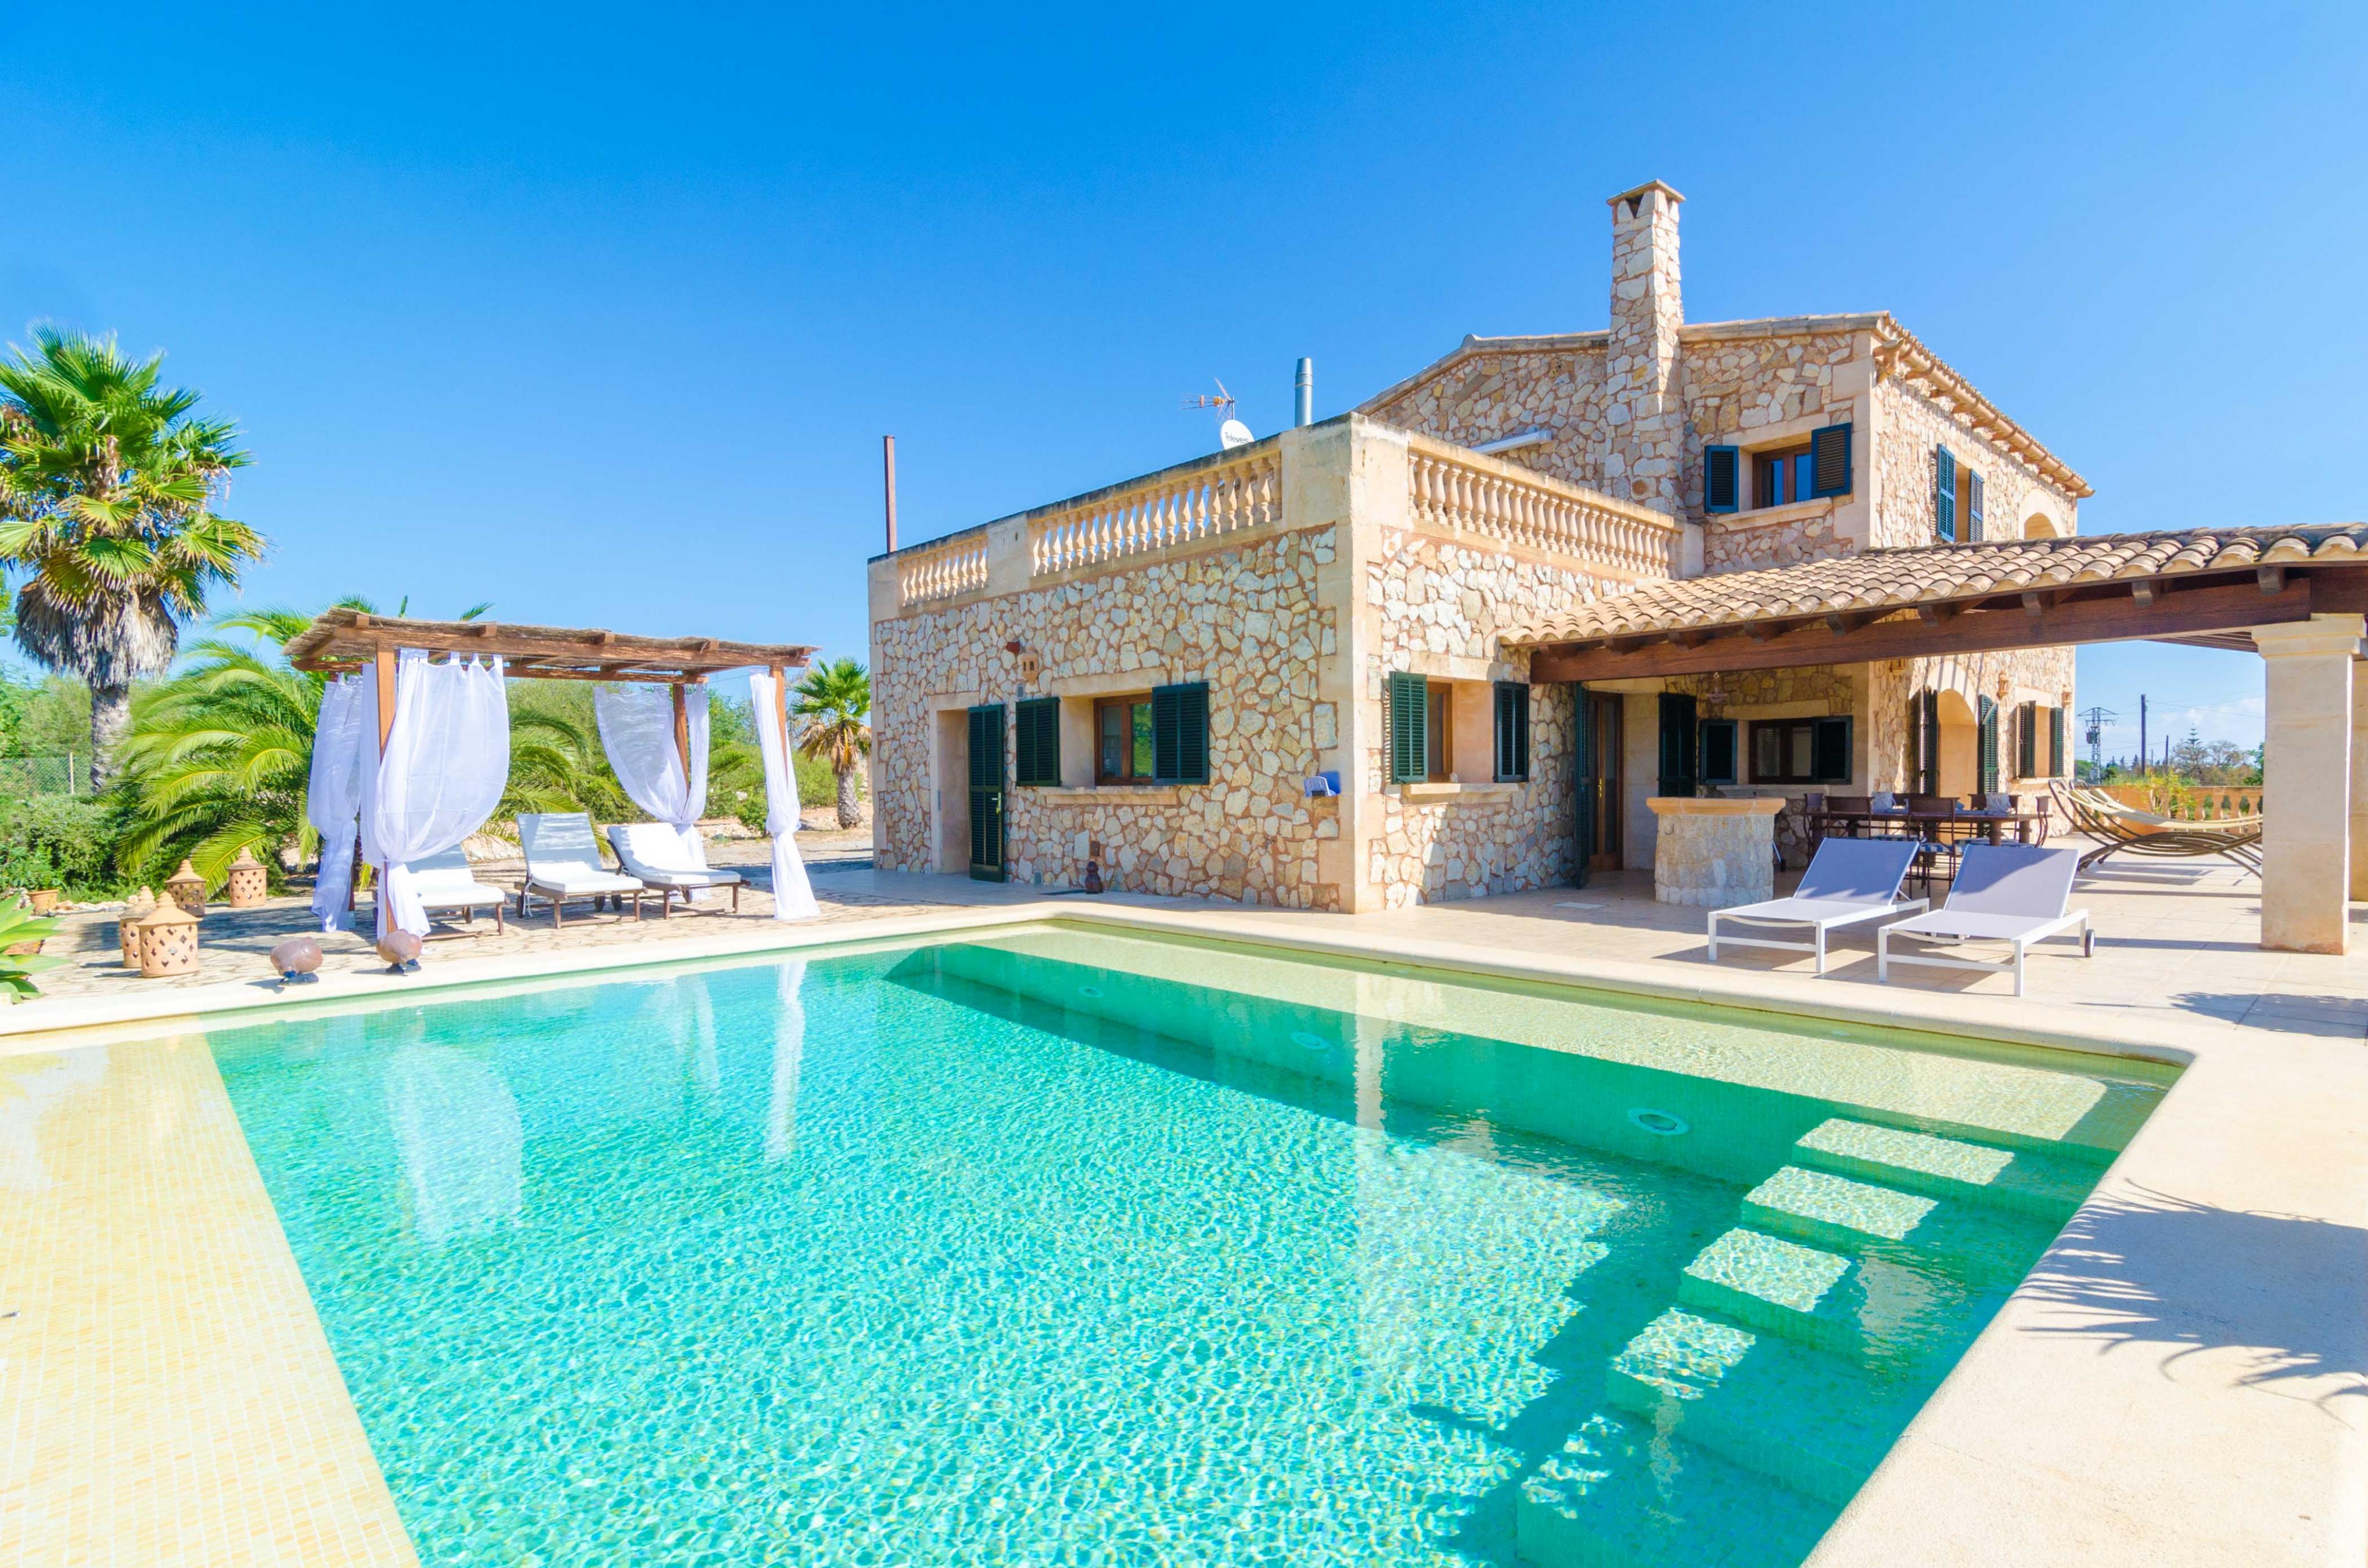 Property Image 1 - CAN TECO - Villa with private pool in PORTO CRISTO. Free WiFi